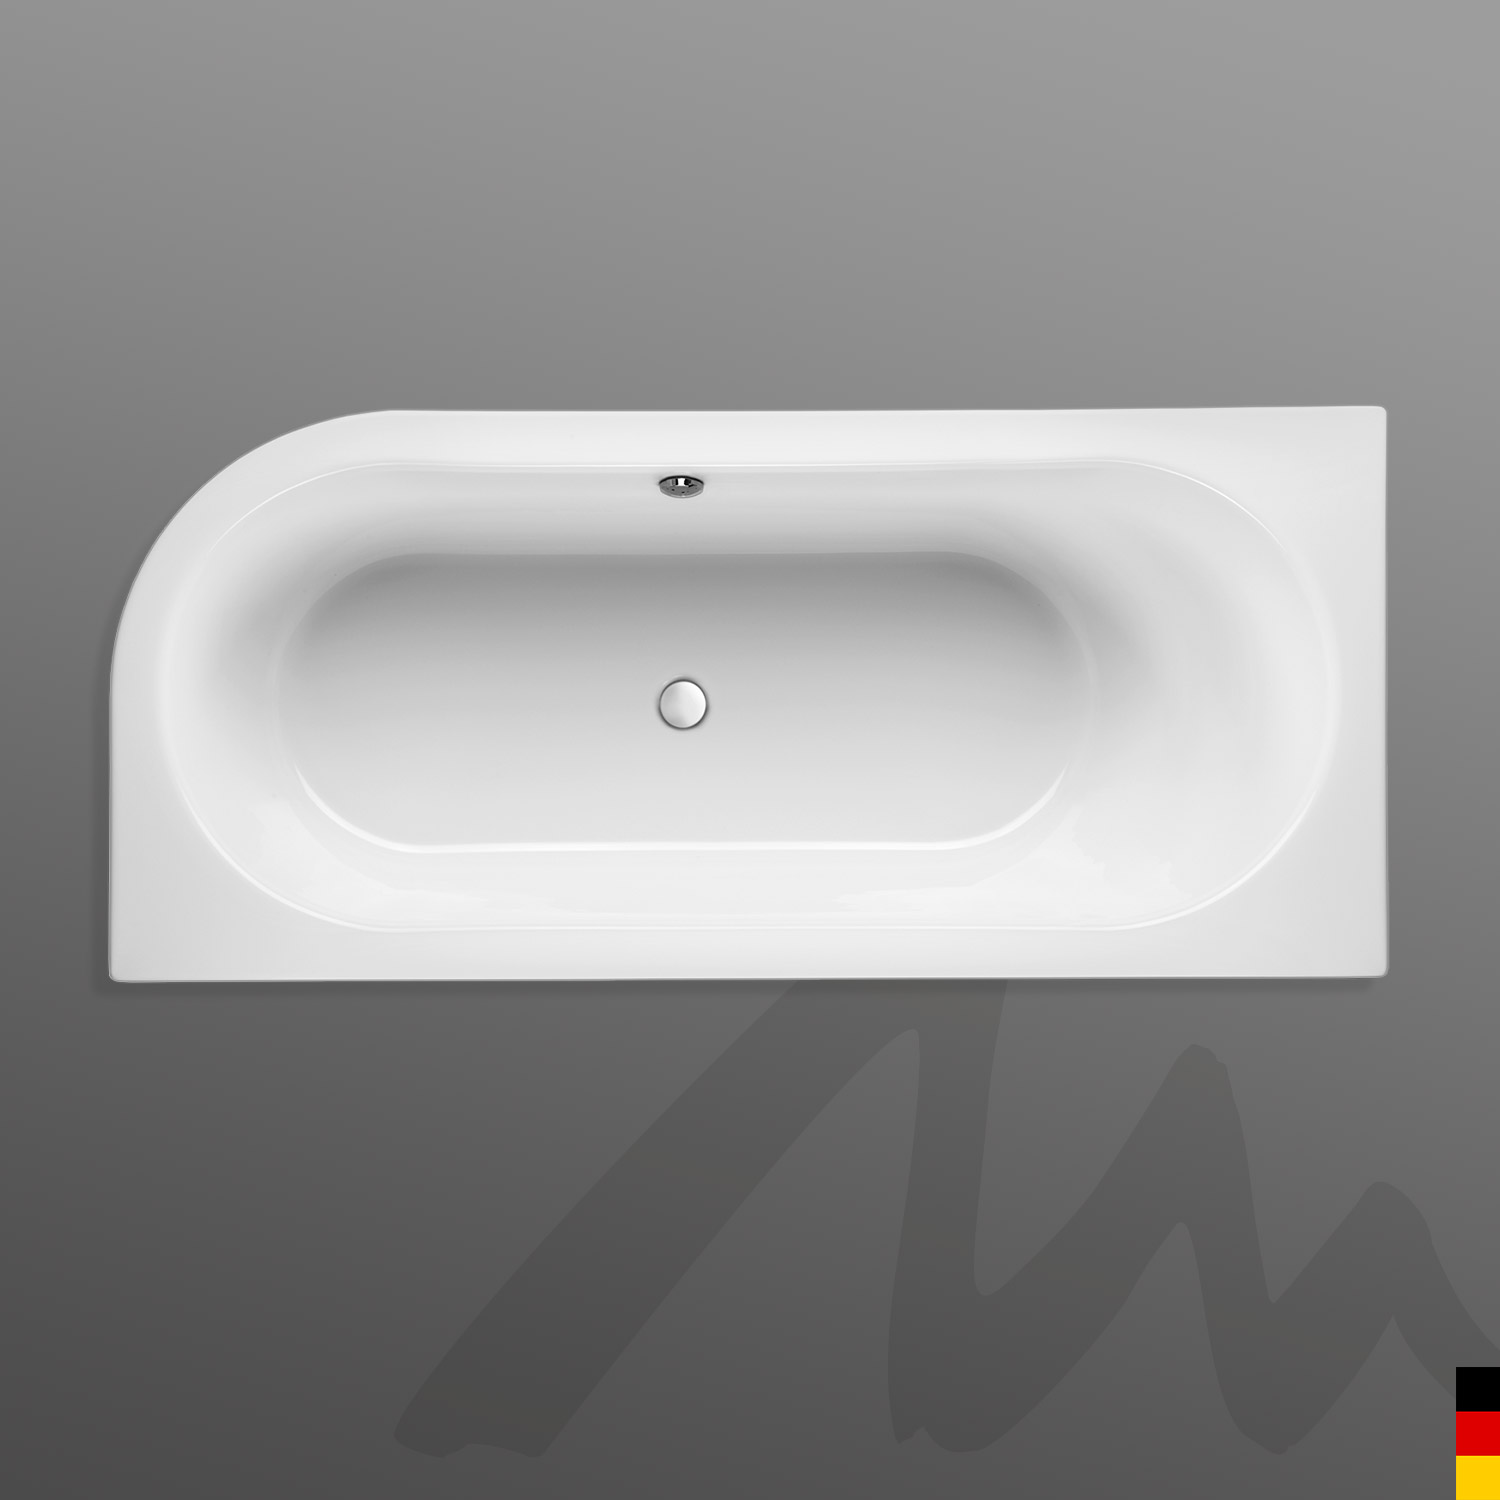 Mauersberger Badewanne Oval Primo 1 - 170/75 uno Ausführung rechts  170x75x44  Farbe:rein-weiß